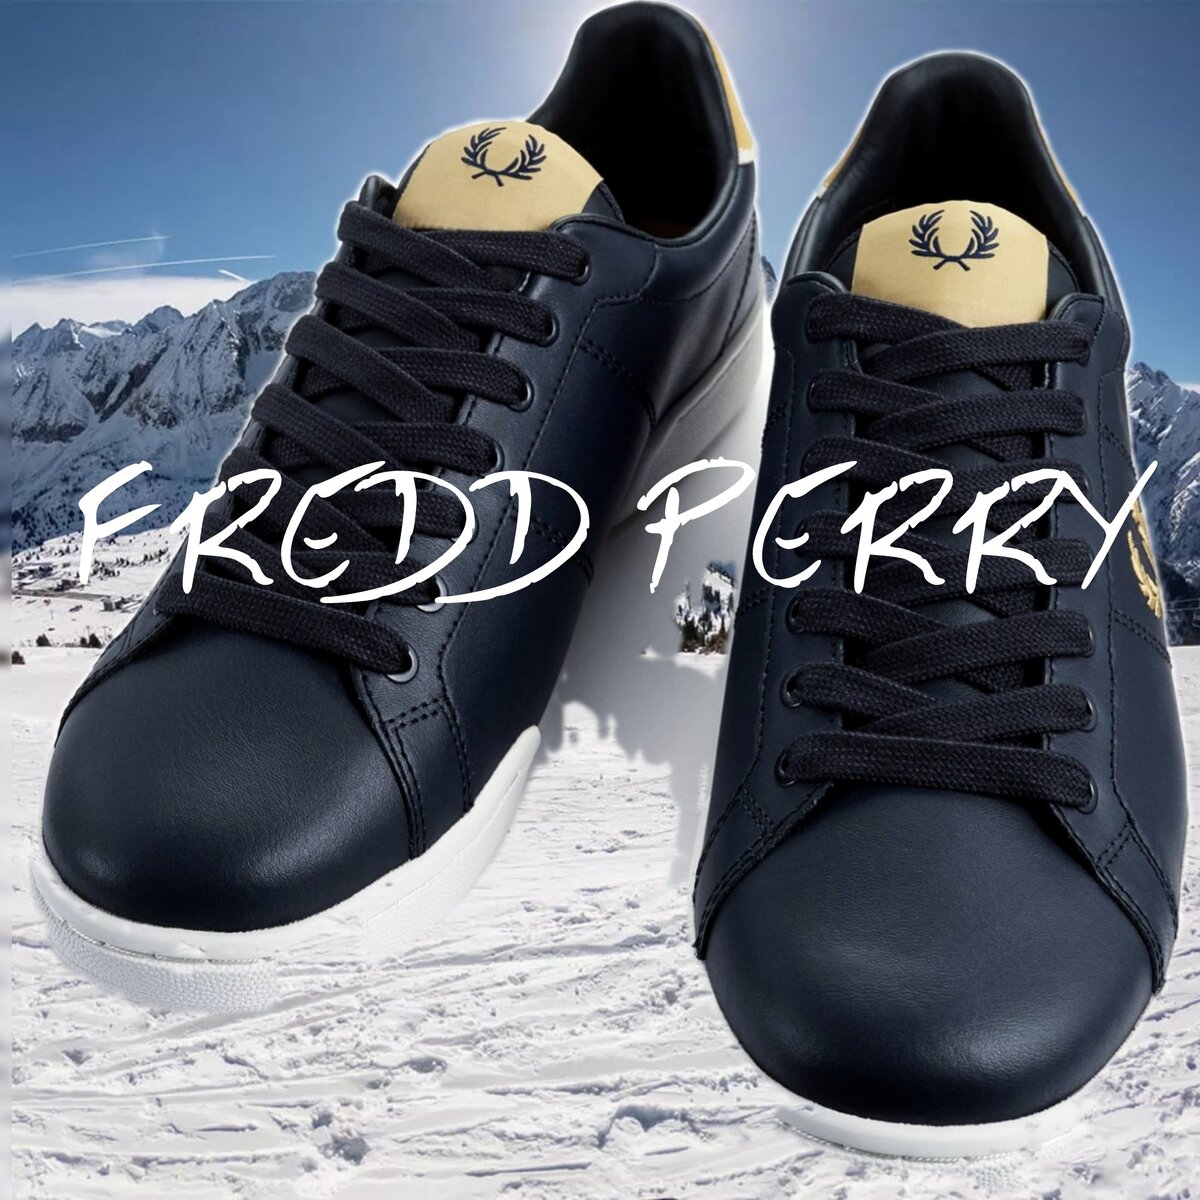 Фирменные мужские кеды Fred Perry: от спорта к популярной обуви | RealStyle  | Дзен